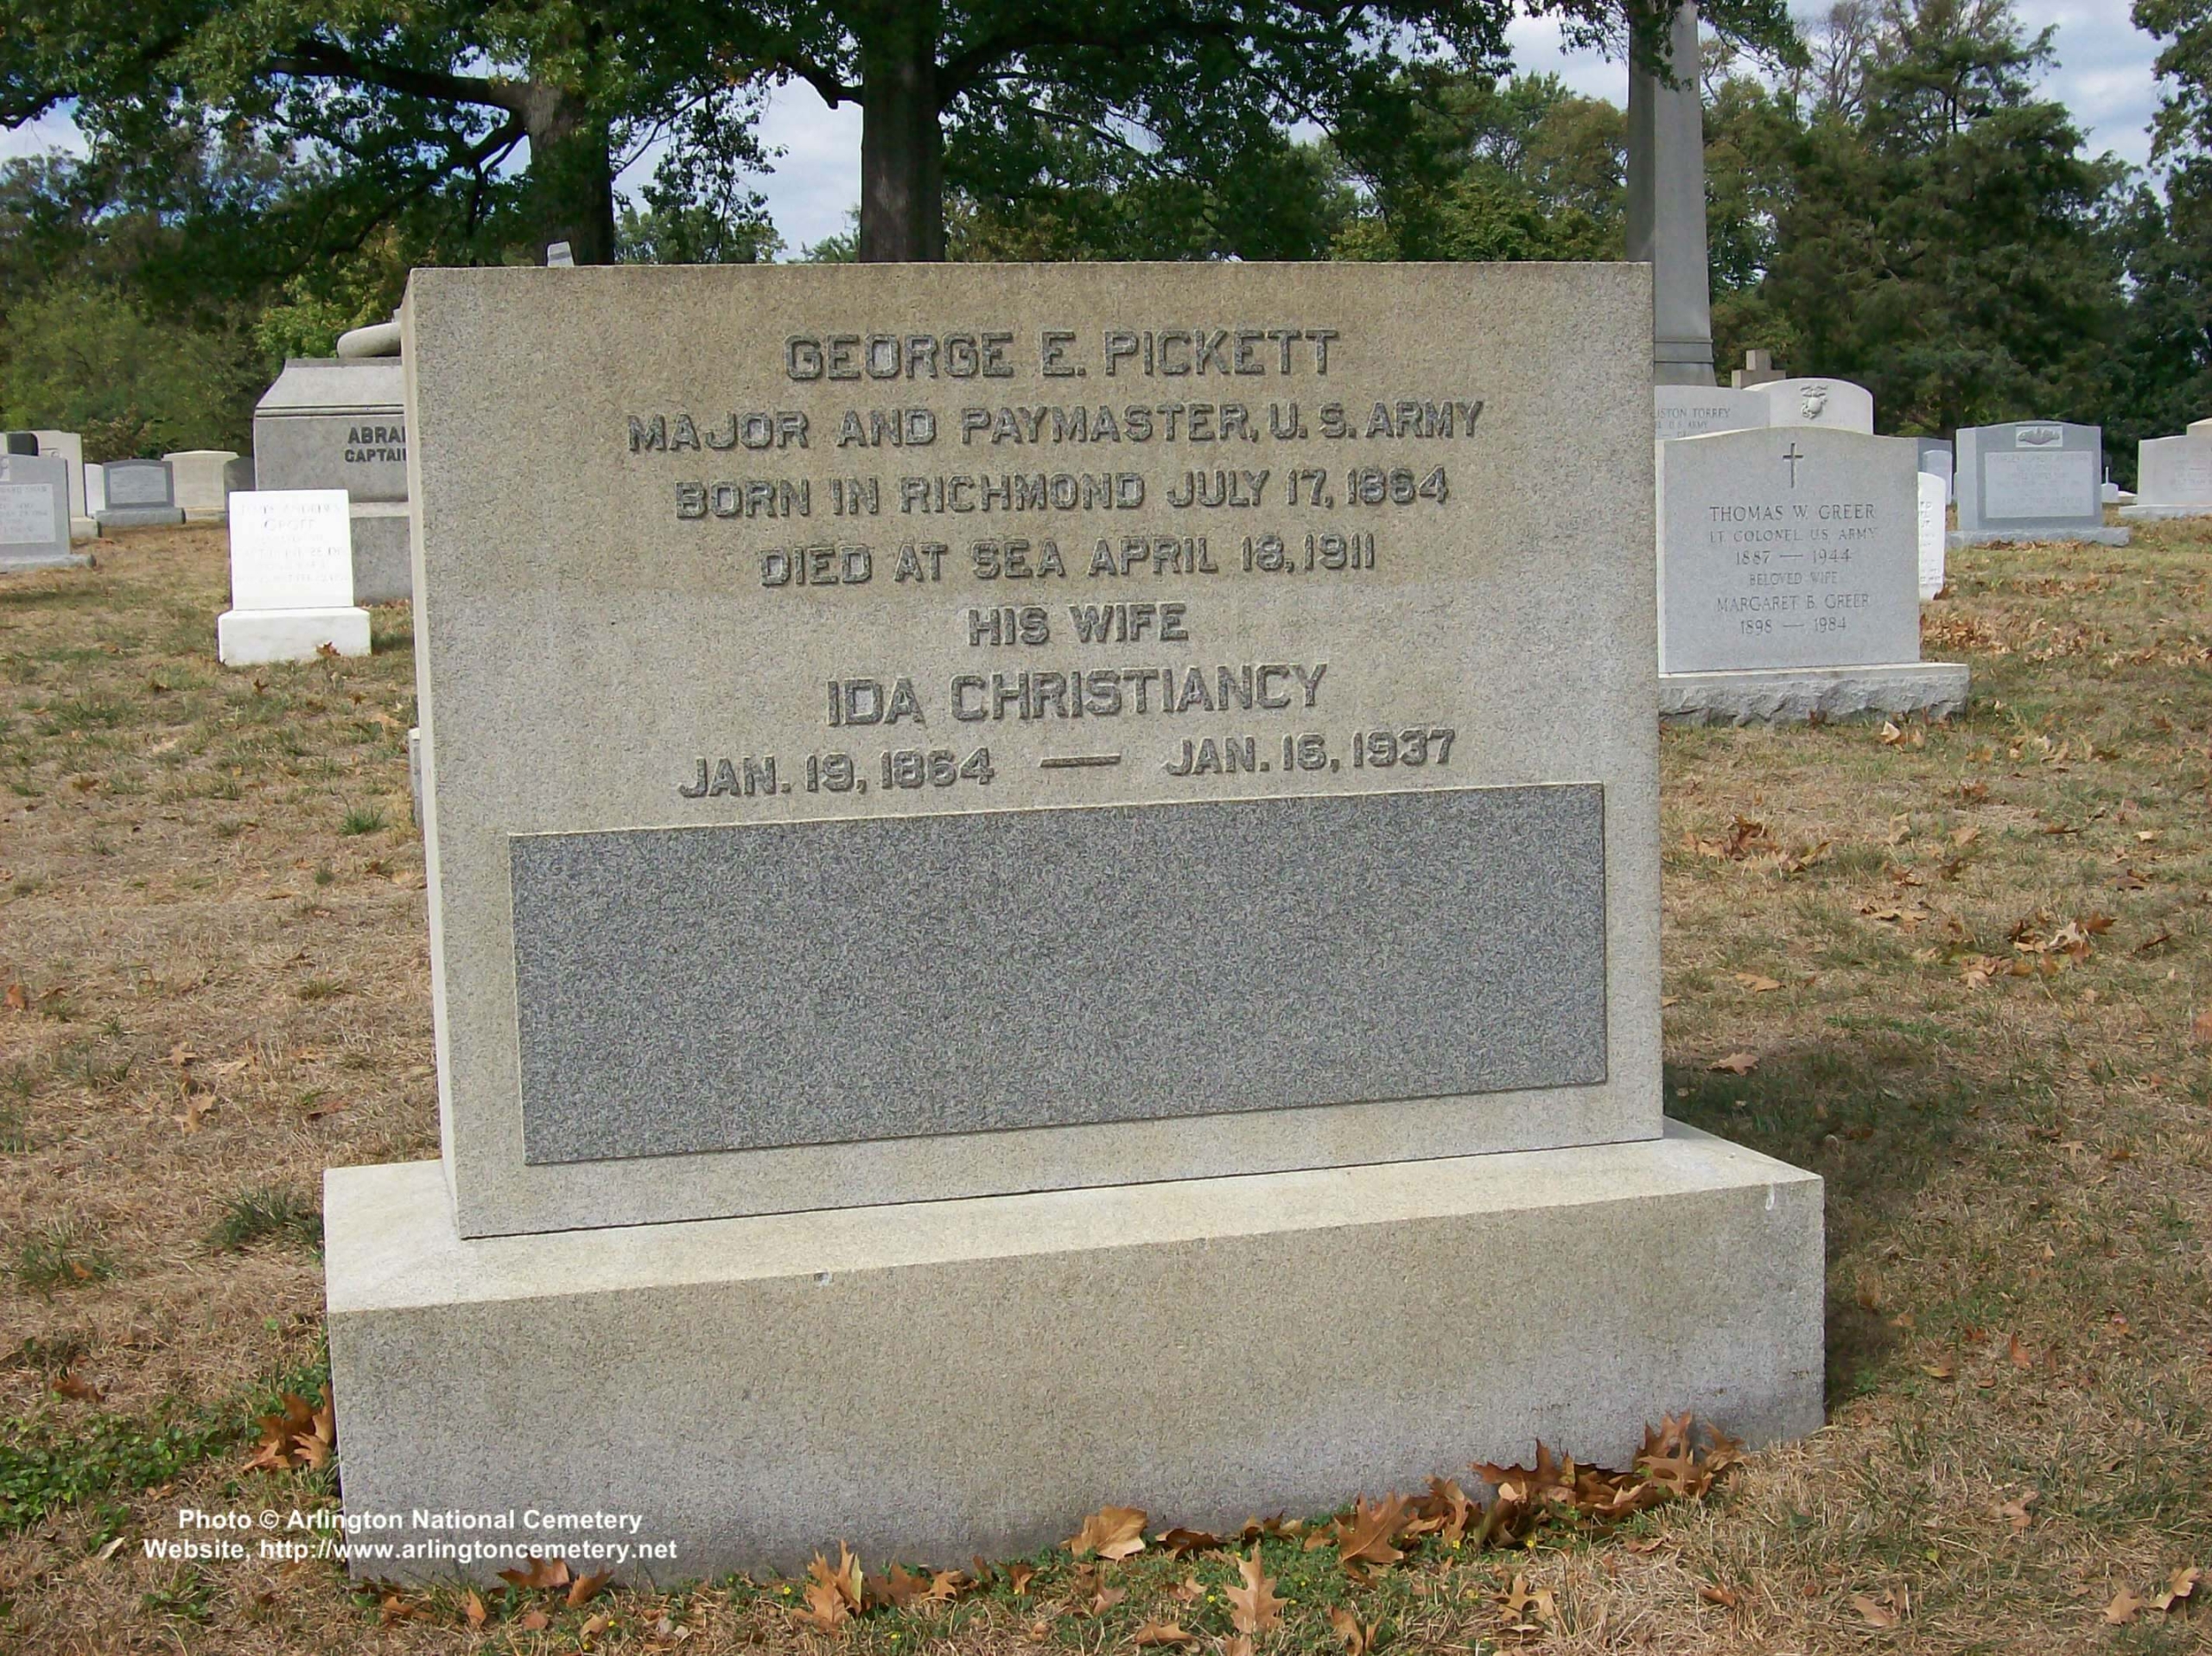 gepickett-gravesite-photo-october-2007-001